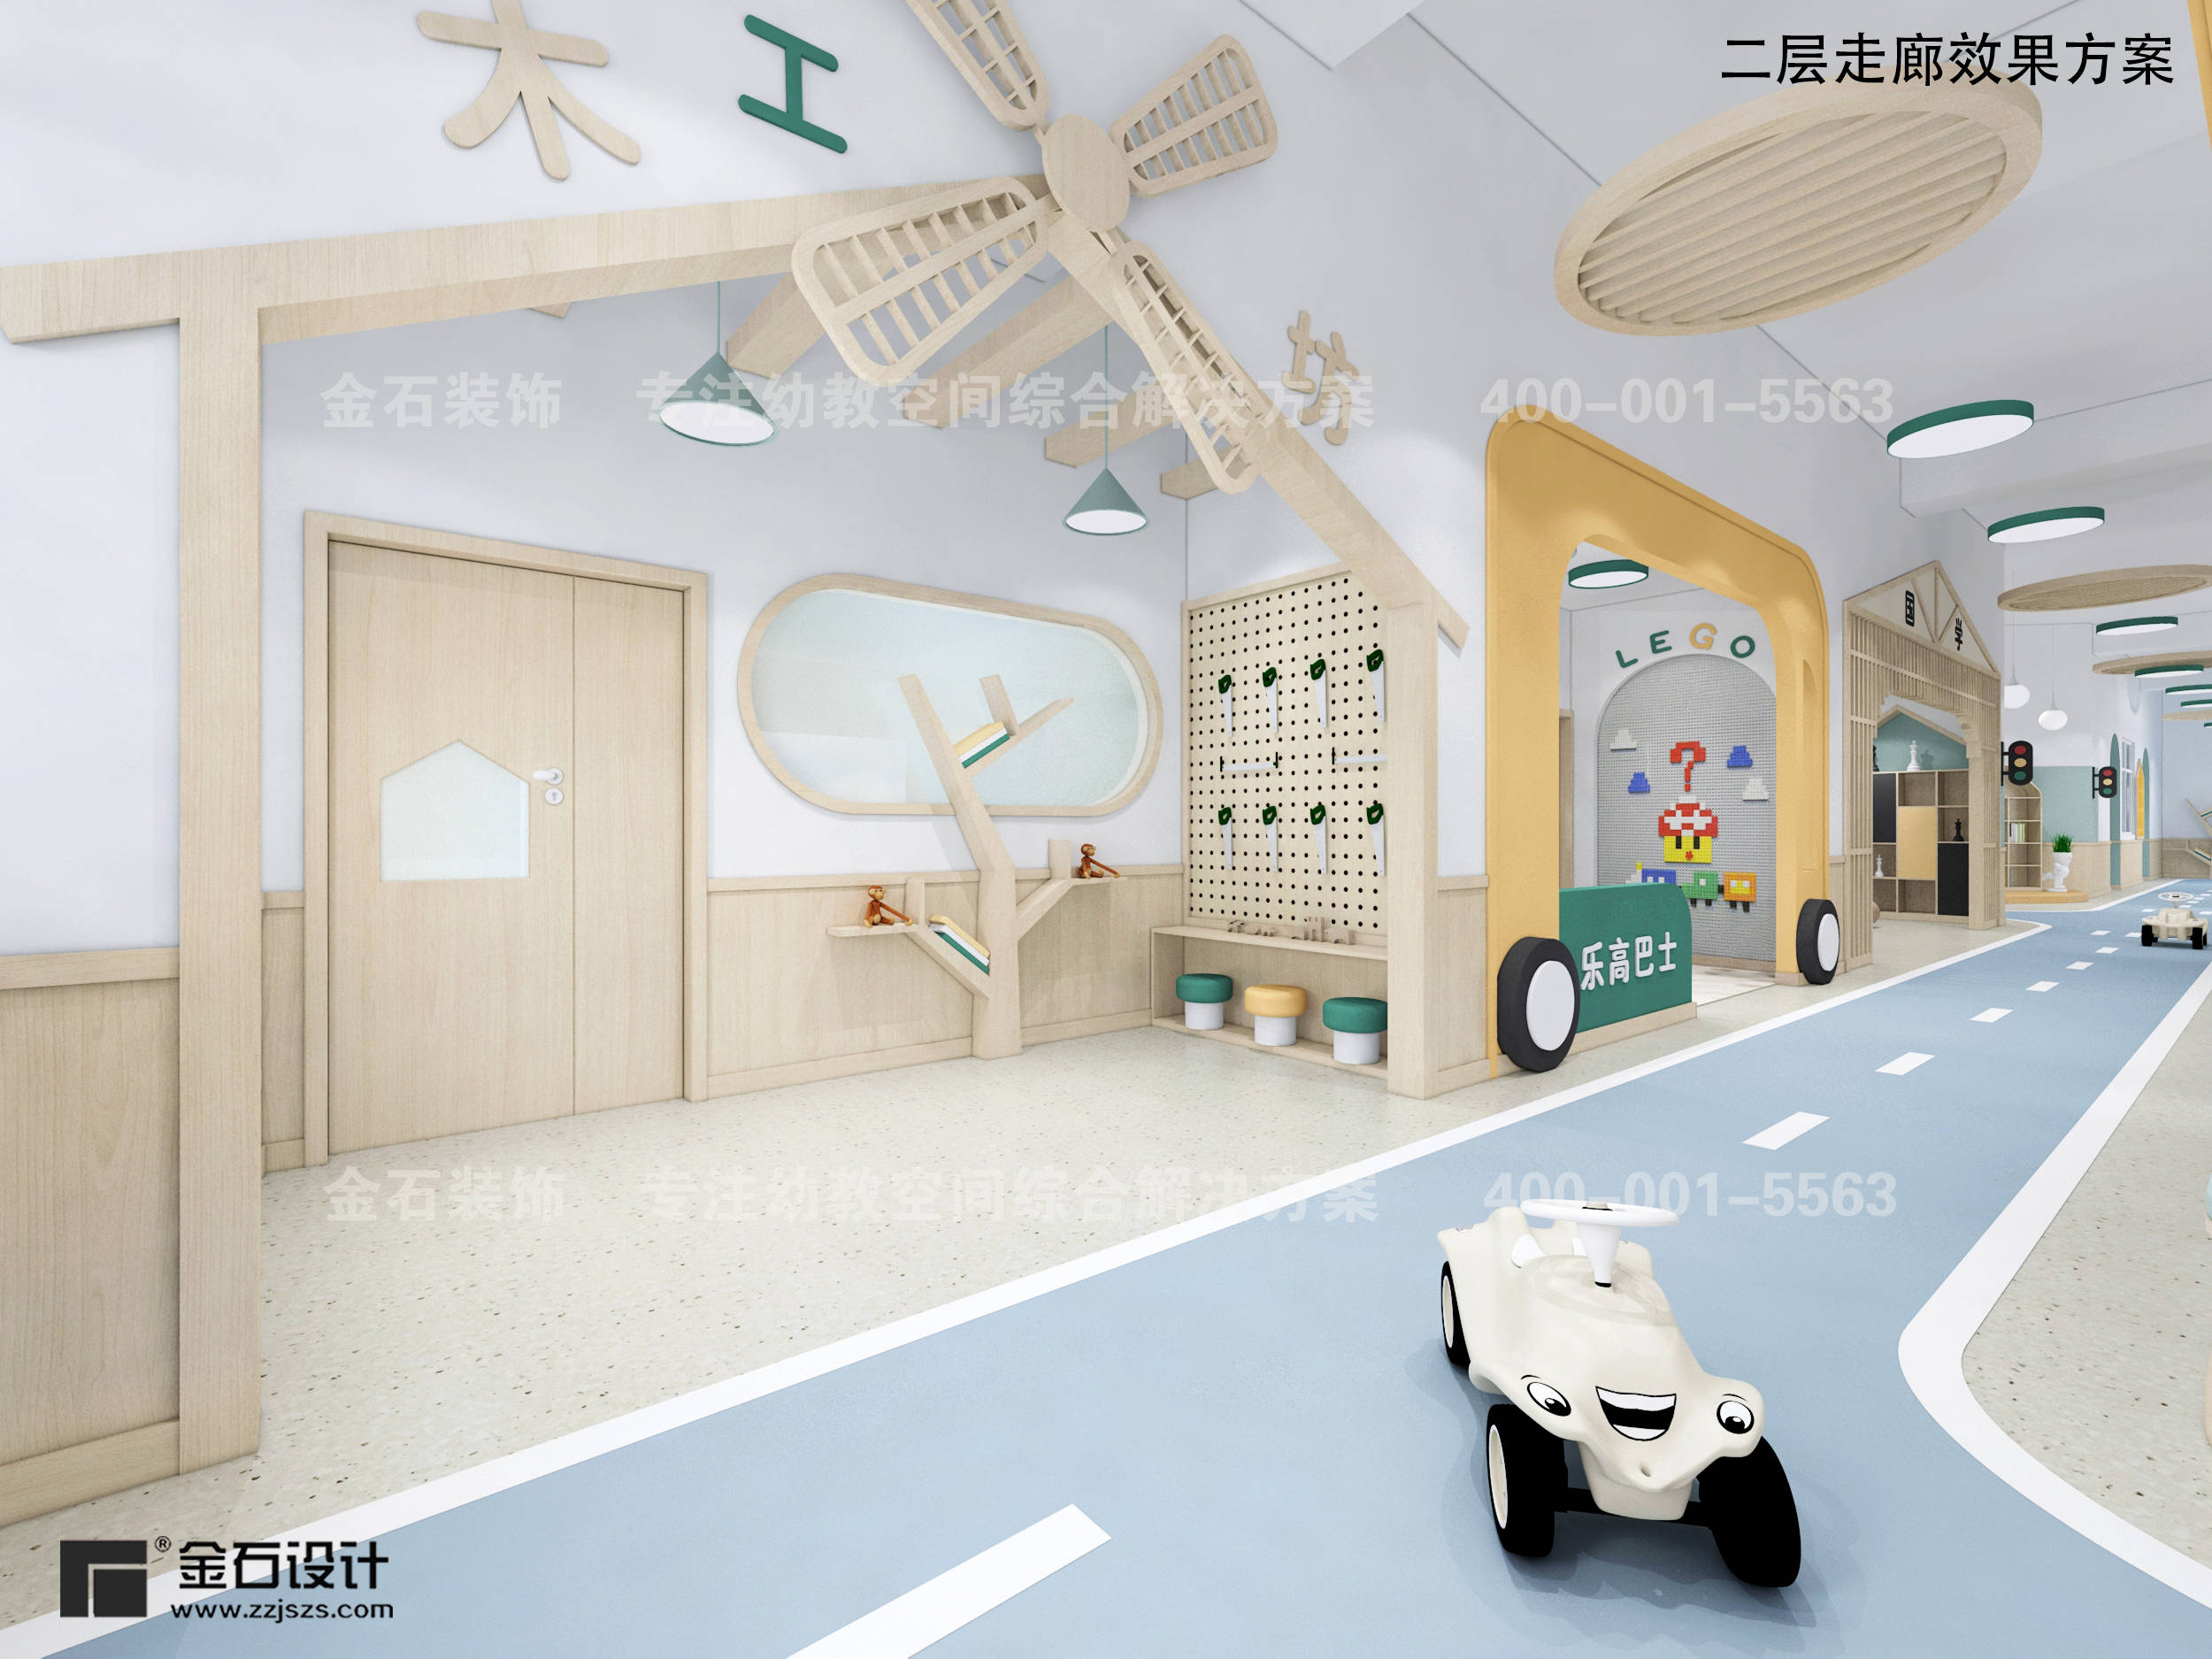 设计|通向童真的道路--幼儿园走廊设计